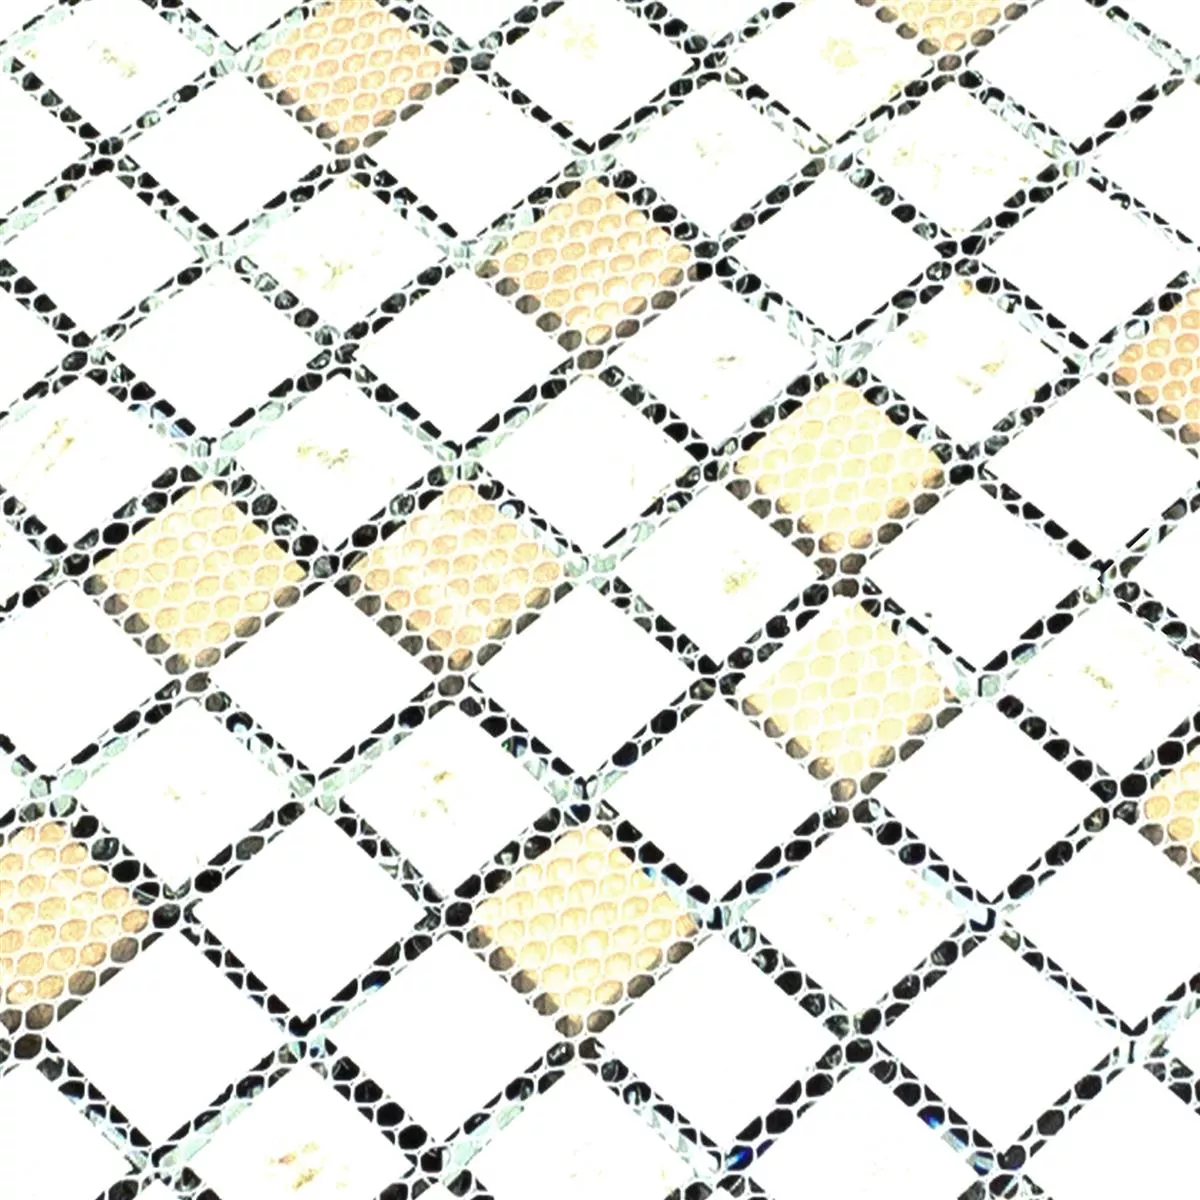 Muster von Mosaikfliesen Glas Edelstahl Blackriver Schwarz Silber Mix